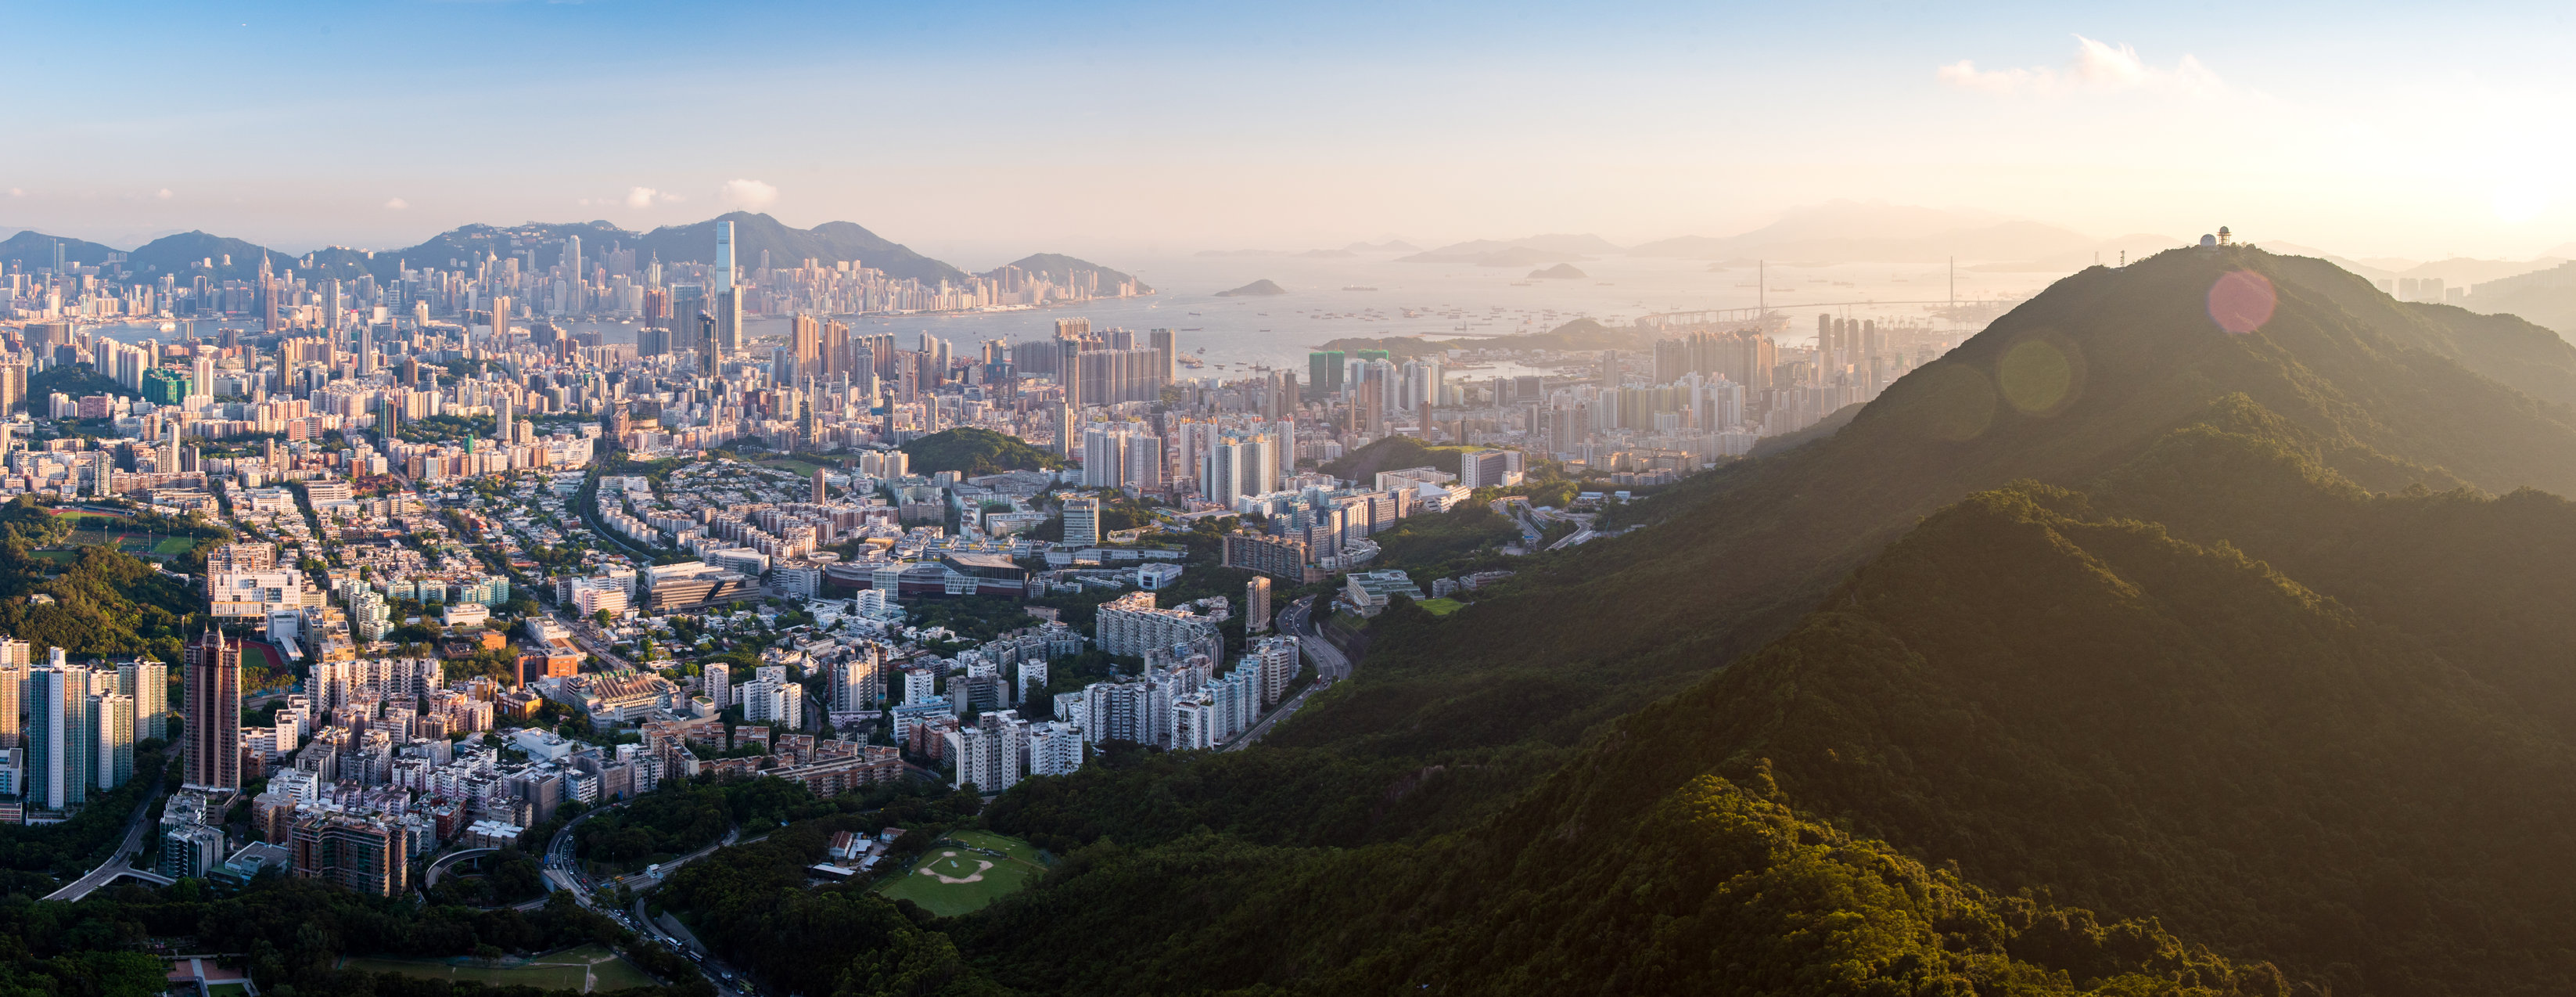 香港獅子山山頂一覽九龍到港島的景色。